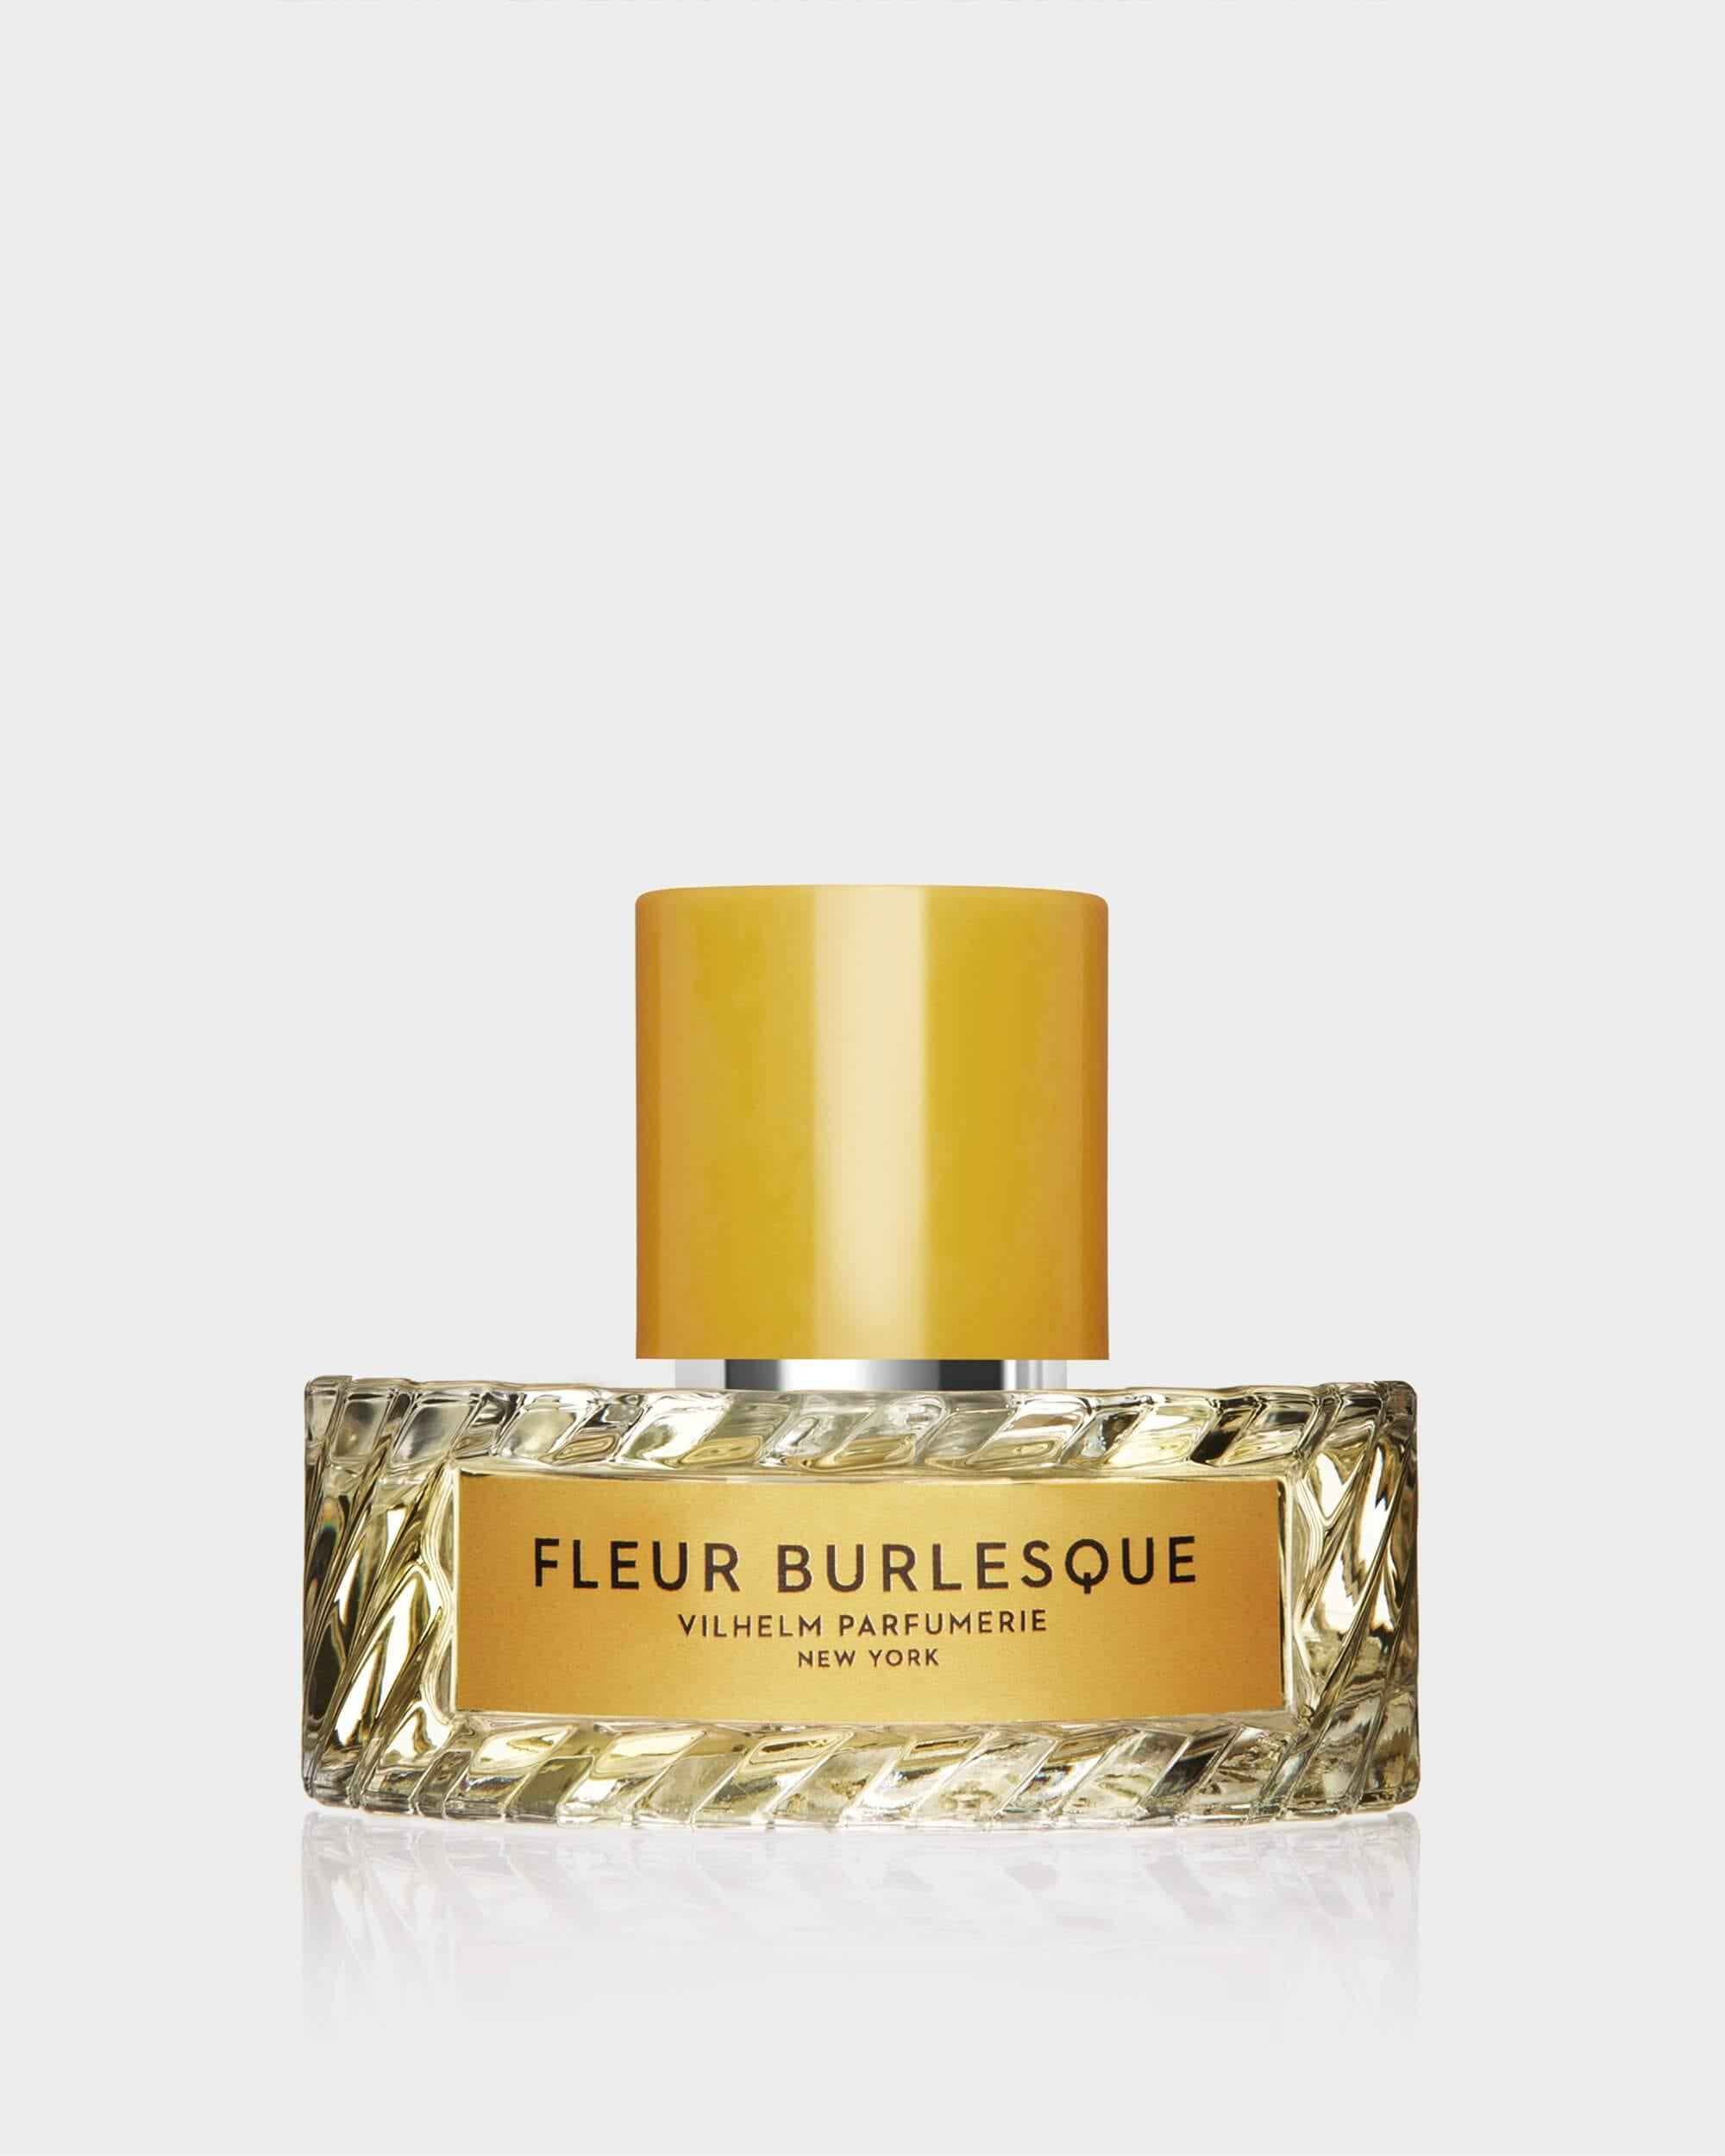 FLEUR BURLESQUE - Vilhelm Parfumerie